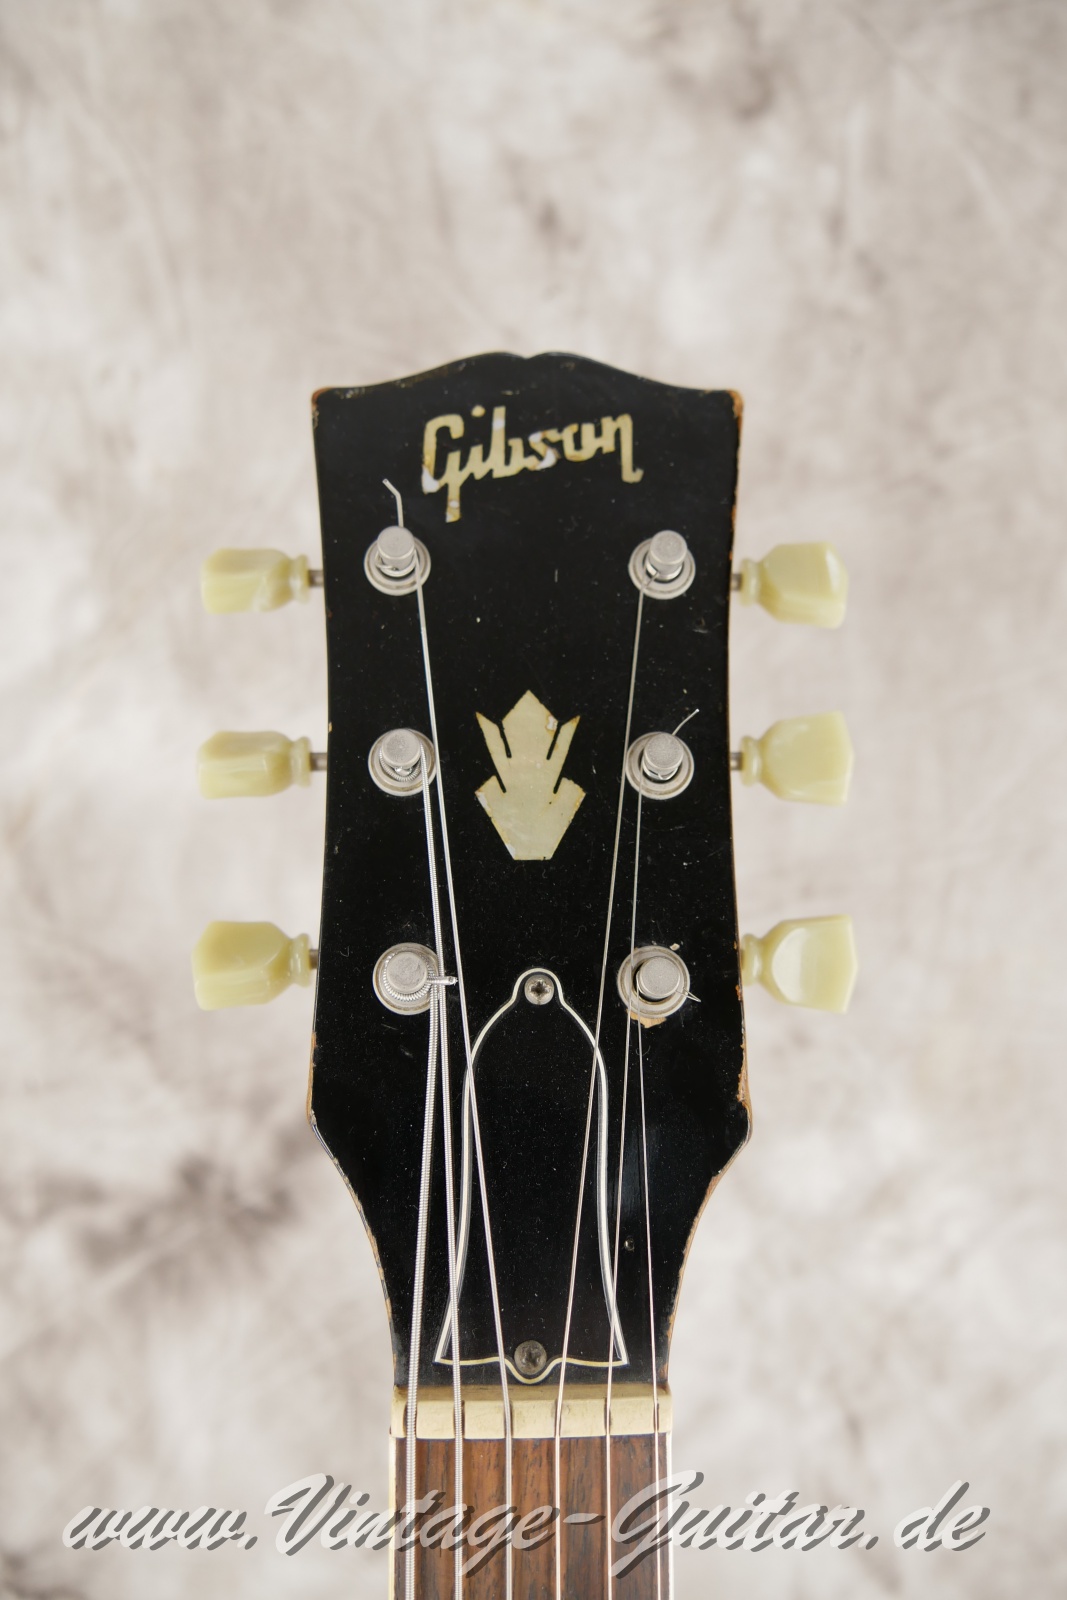 Gibson-ES-335TD-sunburst-1967-005.JPG